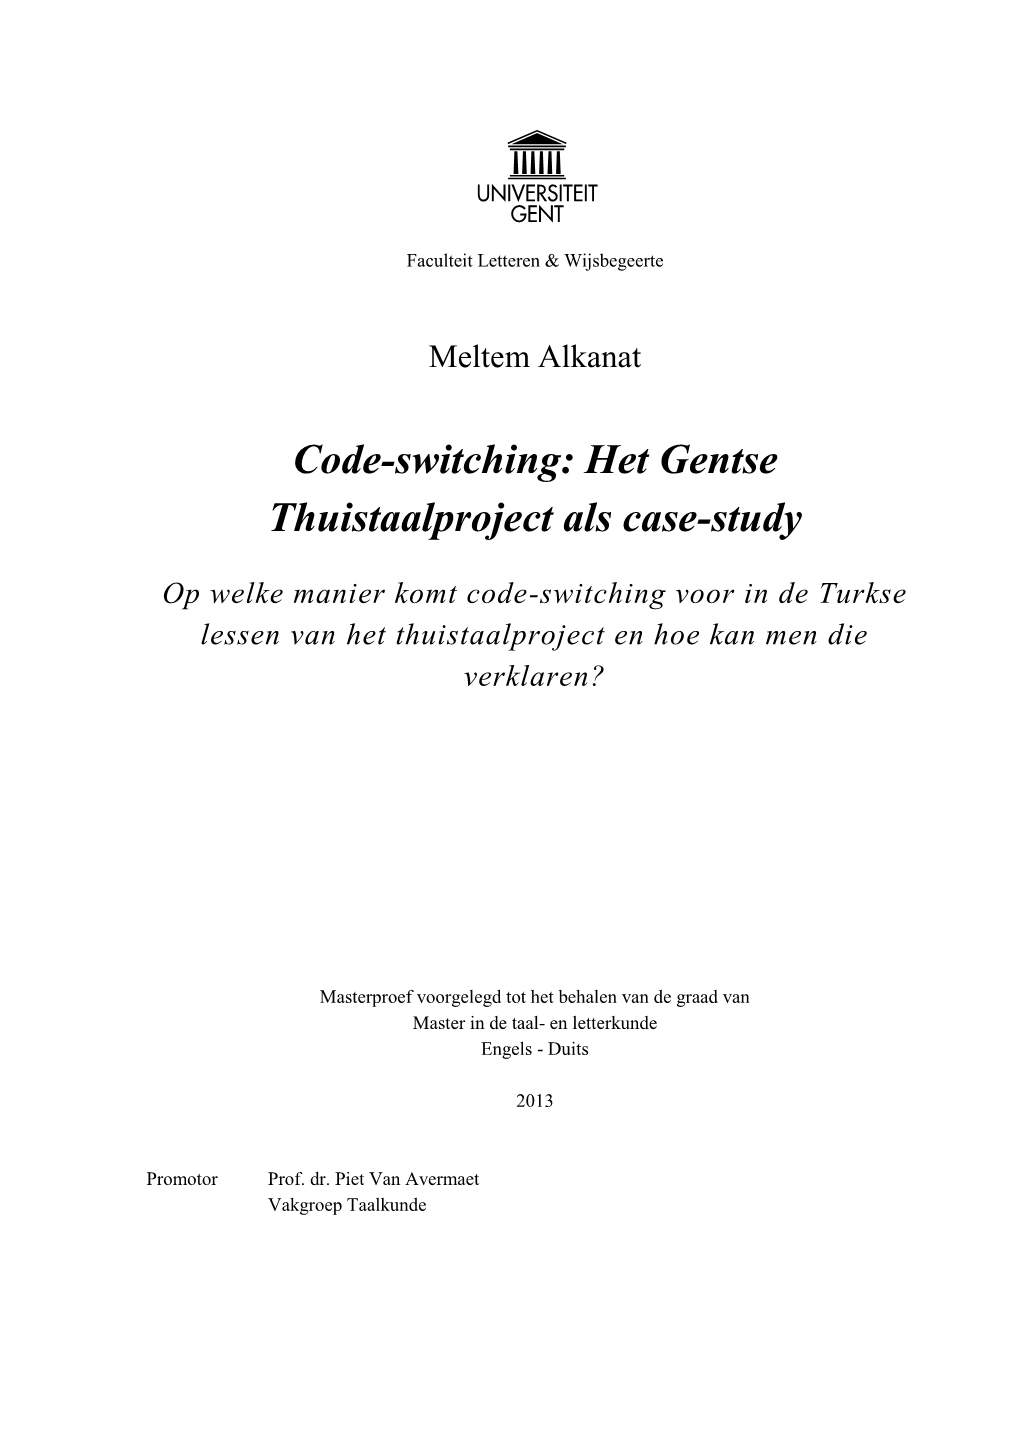 Code-Switching: Het Gentse Thuistaalproject Als Case-Study